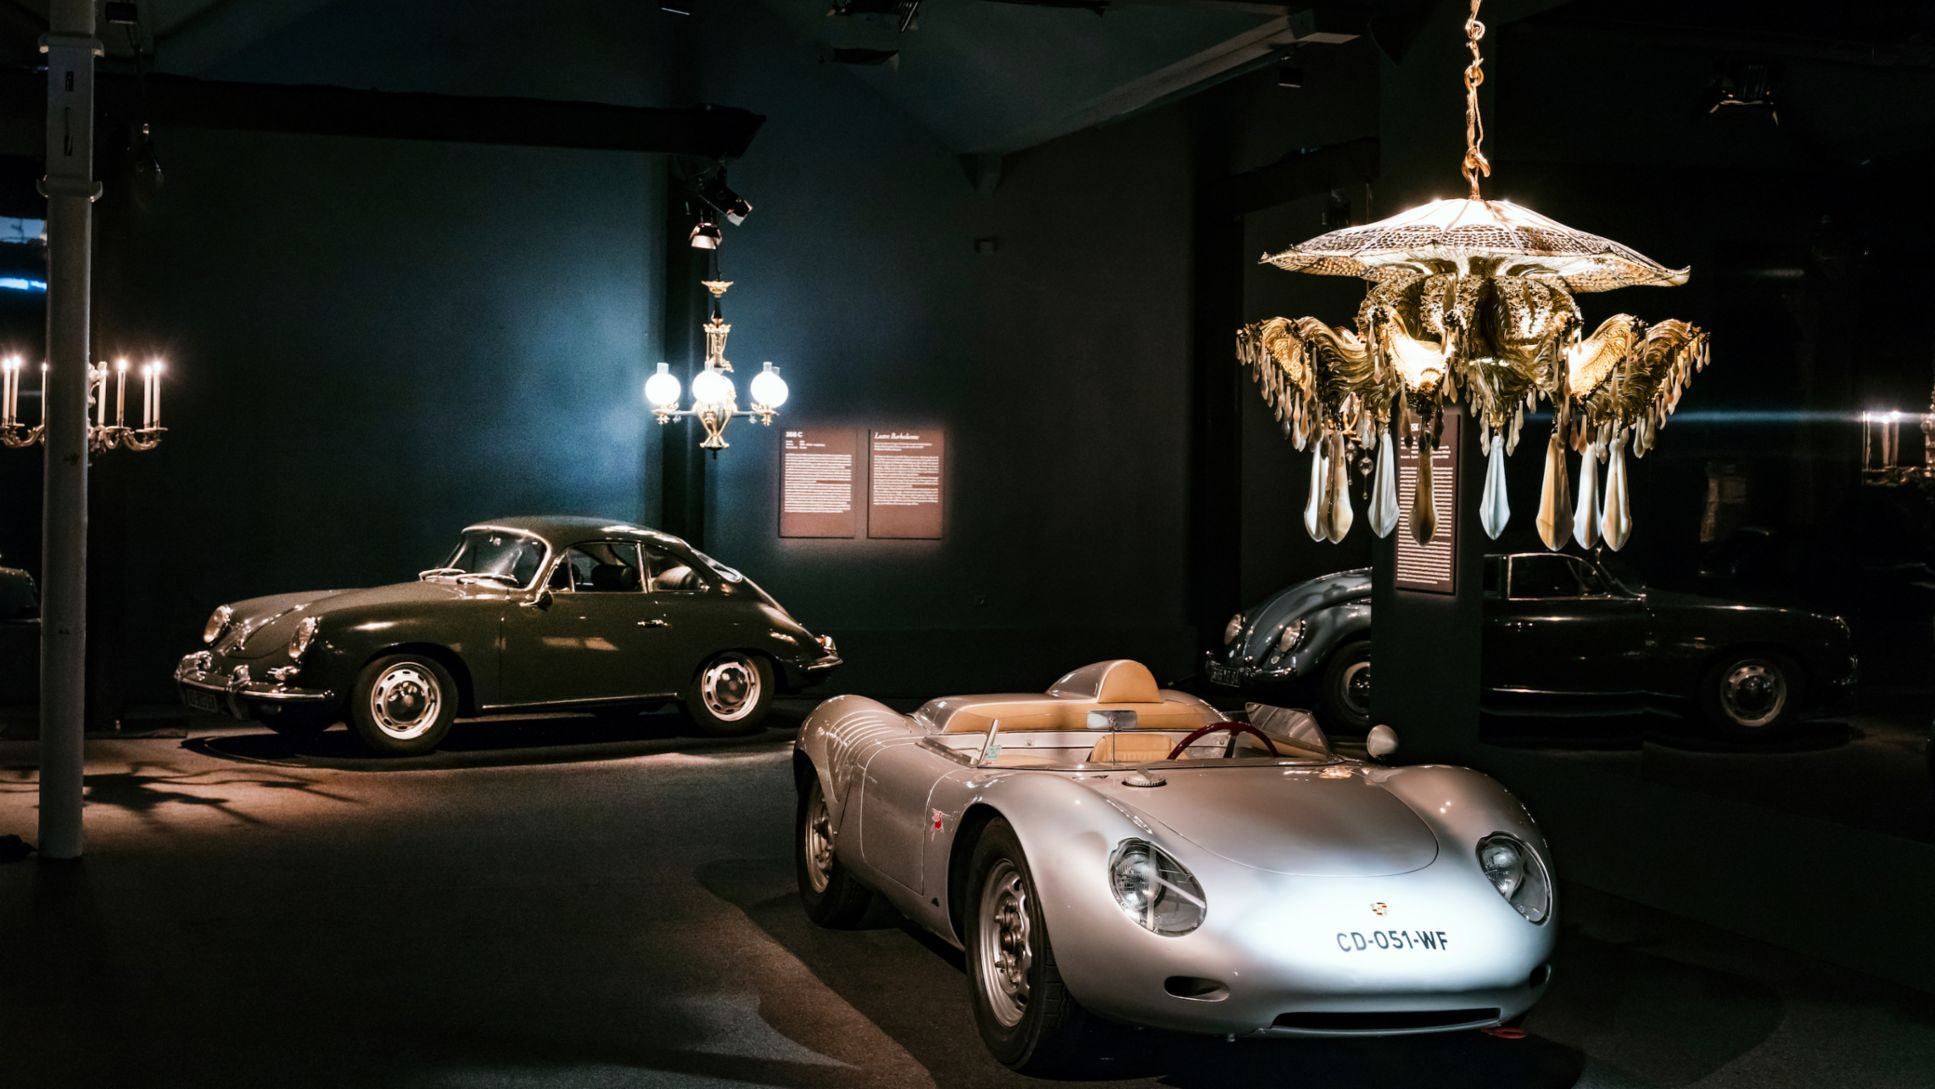 Exhibition "Porsche: Masterpieces From the Régis Mathieu Collection", Automobile Museum Cité de l’Automobile, Mulhouse, France, 2018, Porsche AG